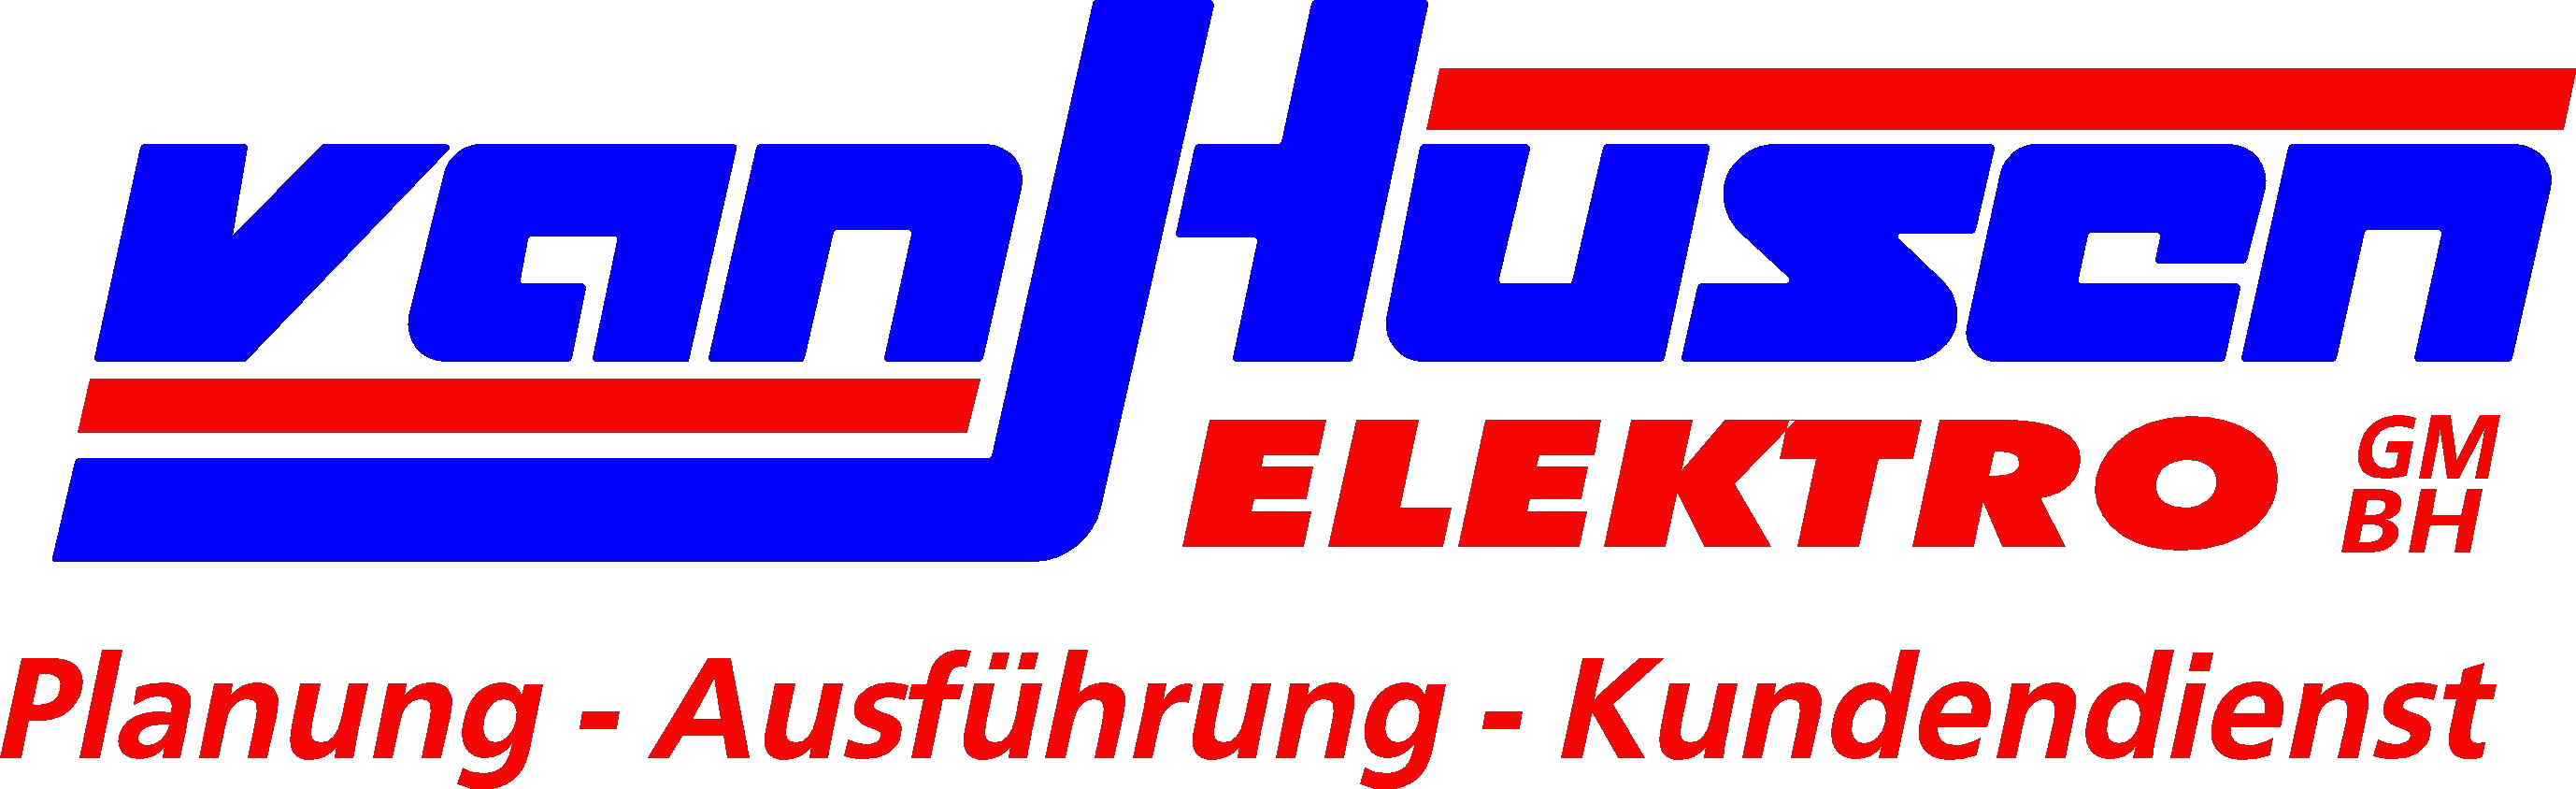 Elektro van Husen GmbH